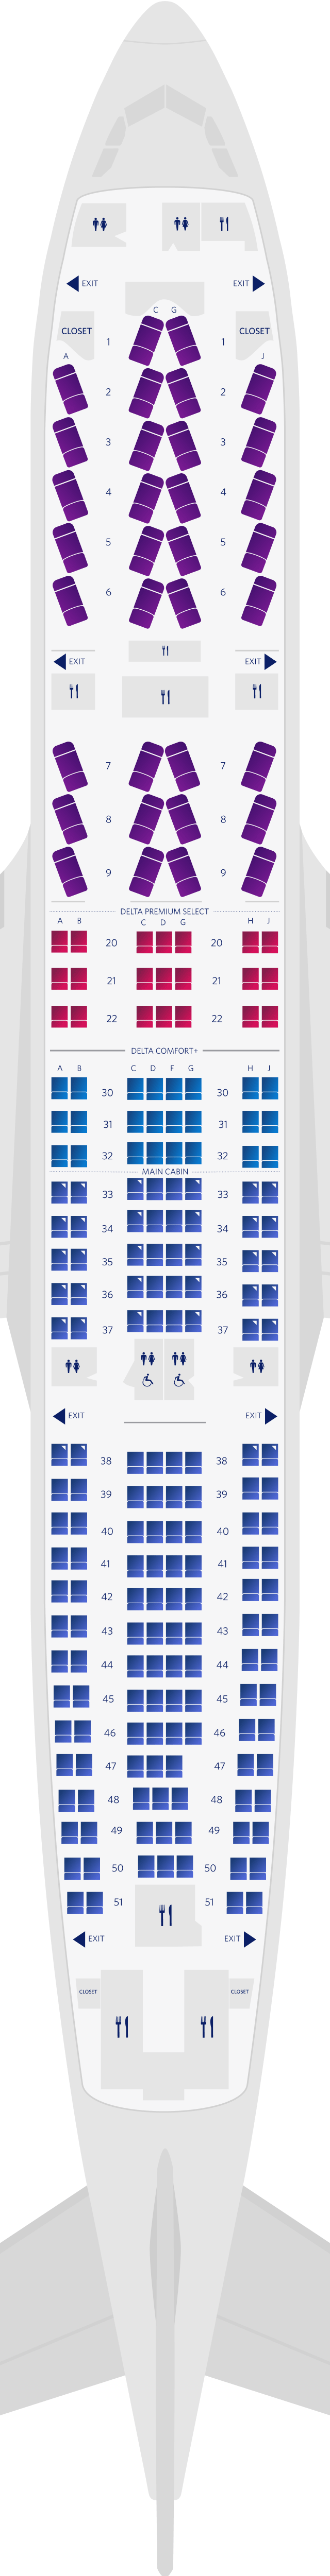 Mapa de assentos do Airbus A330-200 com 4 cabines